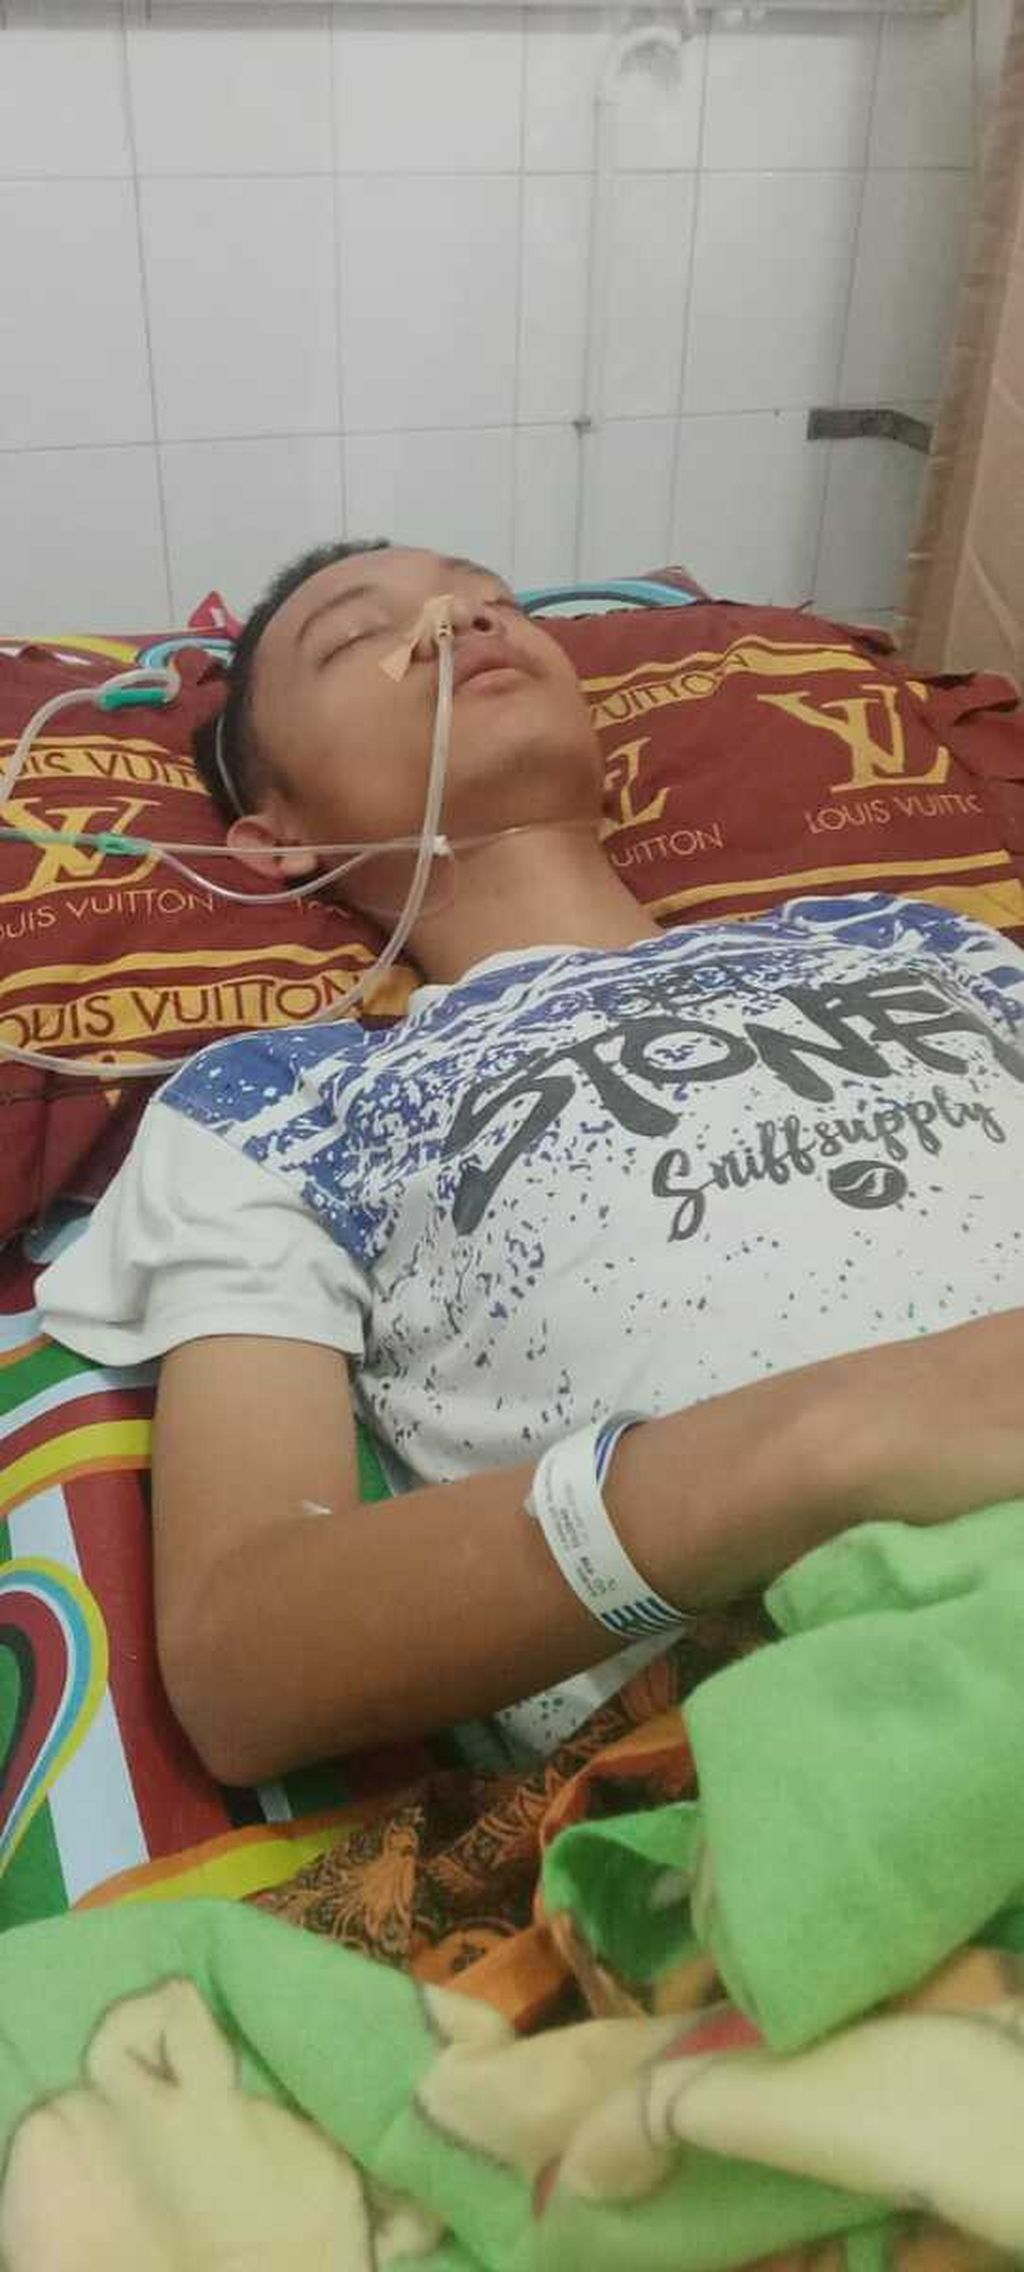 Yaredi (17), siswa di Nias Selatan, Sumatera Utara, yang tewas setelah dipukul kepala sekolah, 